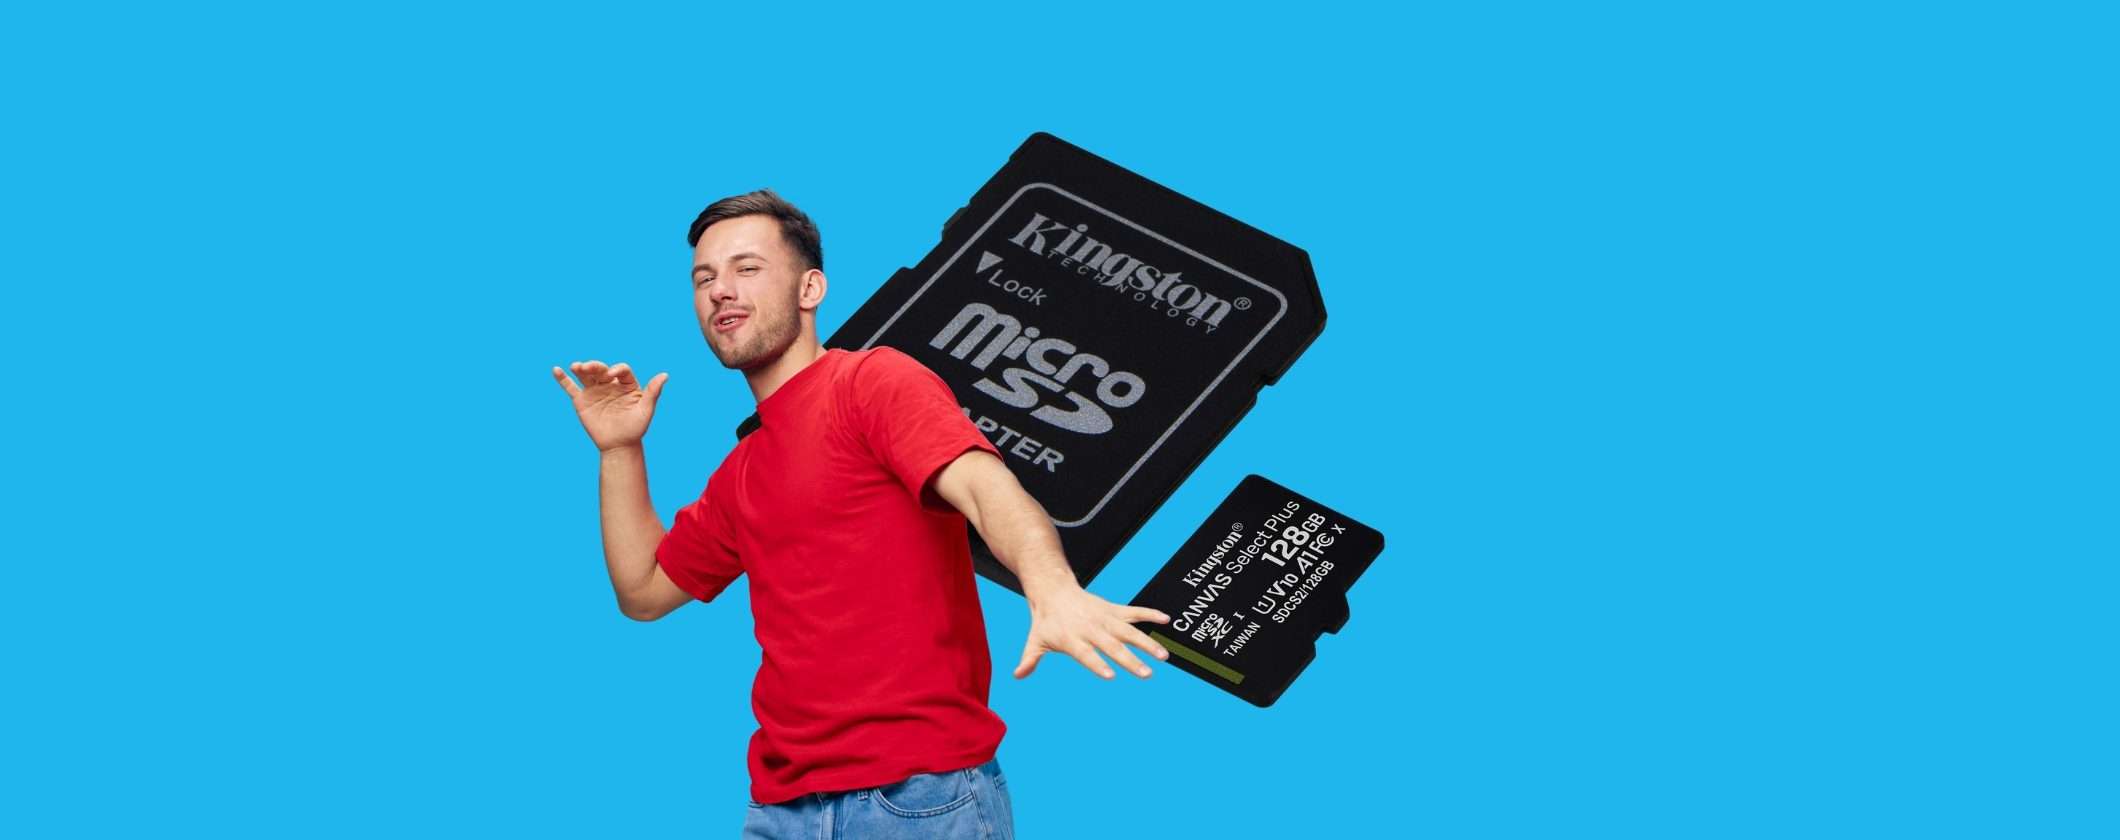 MicroSD Kingston 128GB sotto i 10€ su Amazon